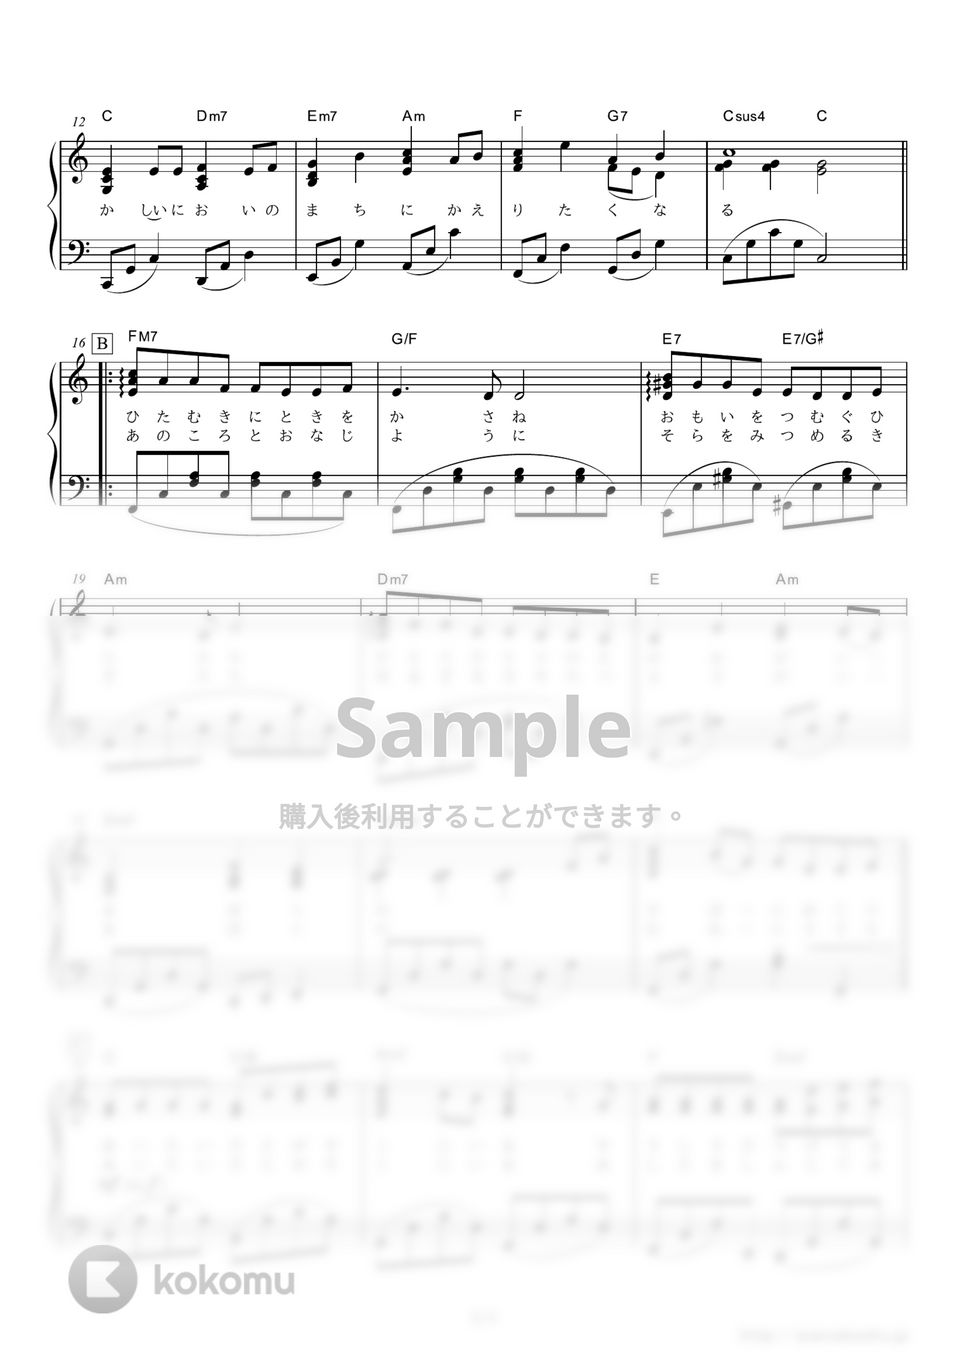 嵐 - ふるさと (2013年NHK全国学校音楽コンクール小学校の部課題曲) by ピアノの本棚